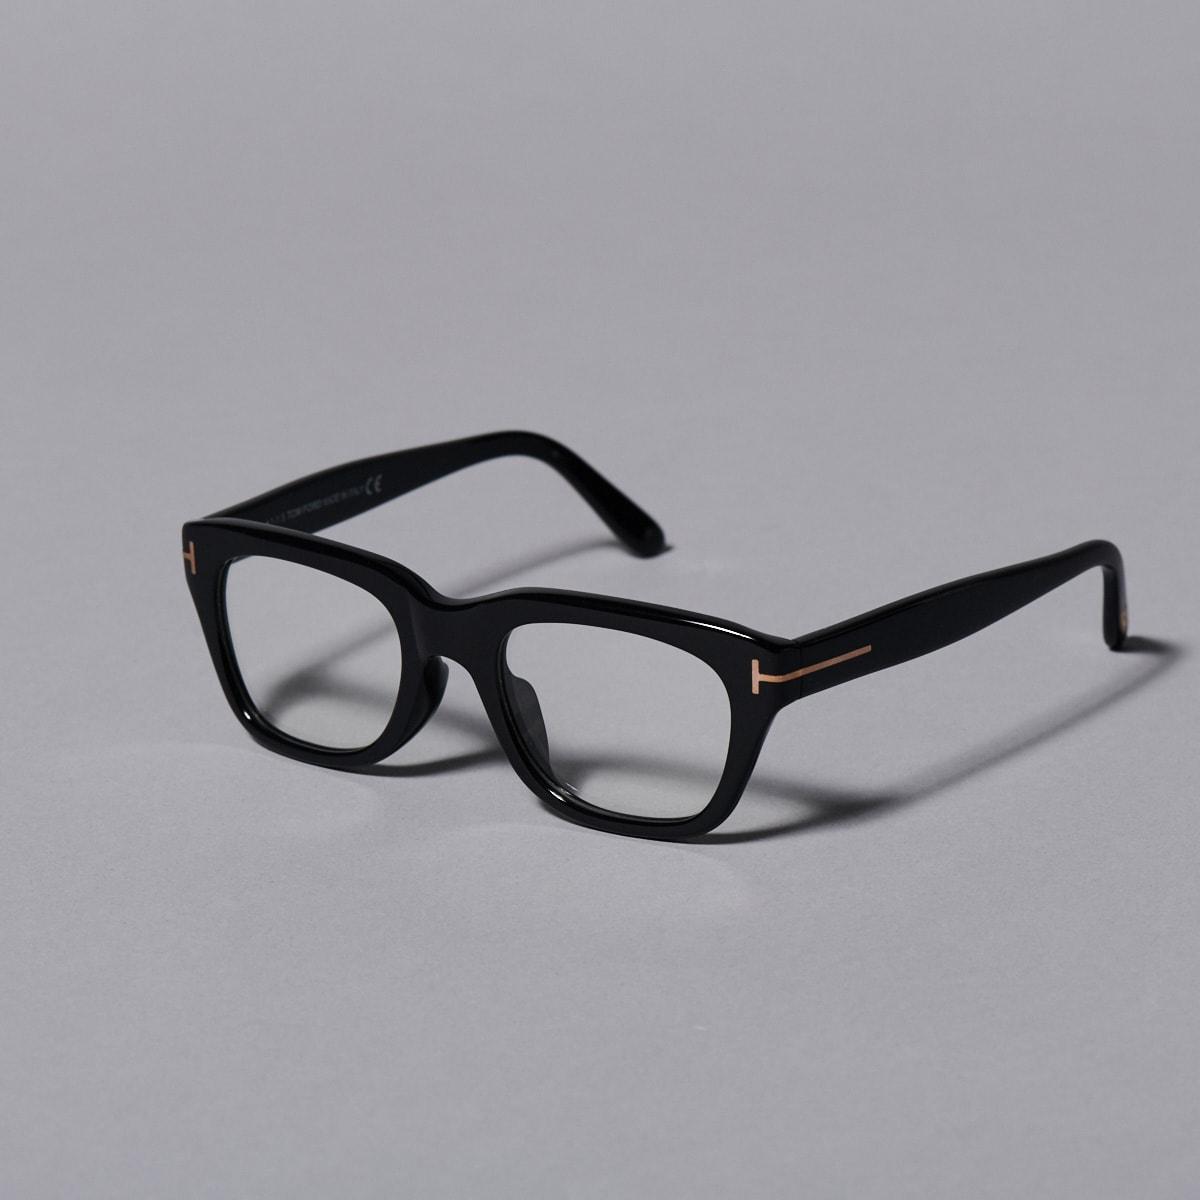 セルフレームの黒縁メガネ。定番から新作まで、黒のスタンダードアイテム - Slide:2